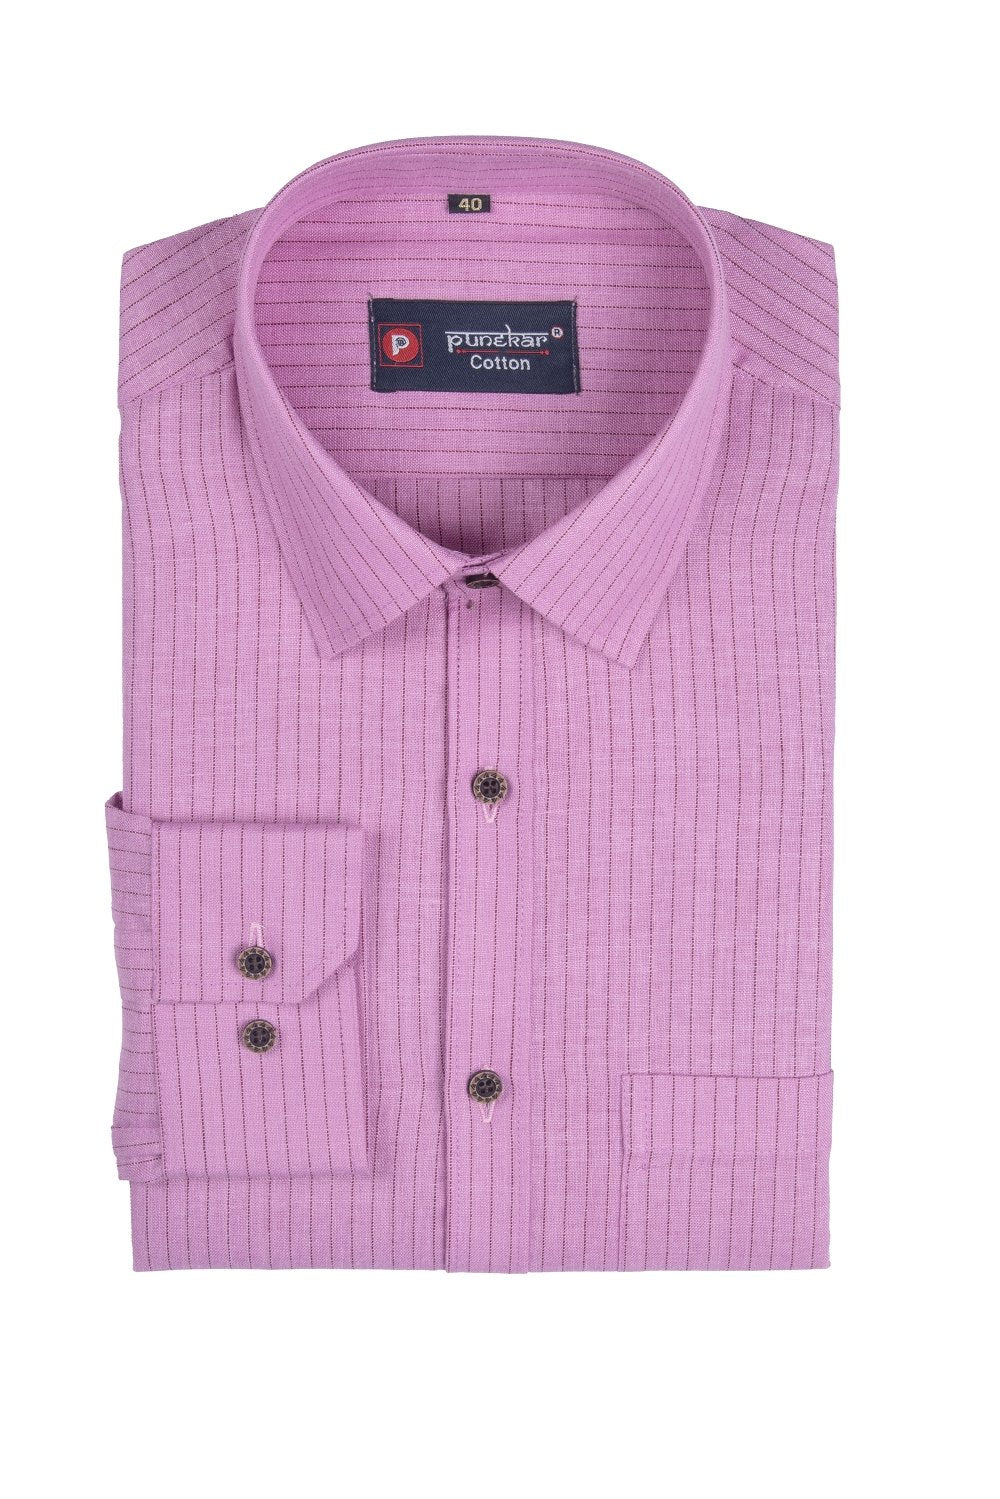 Punekar Cotton Pink Color Linning Criss Cross Woven Cotton Shirt for Men&